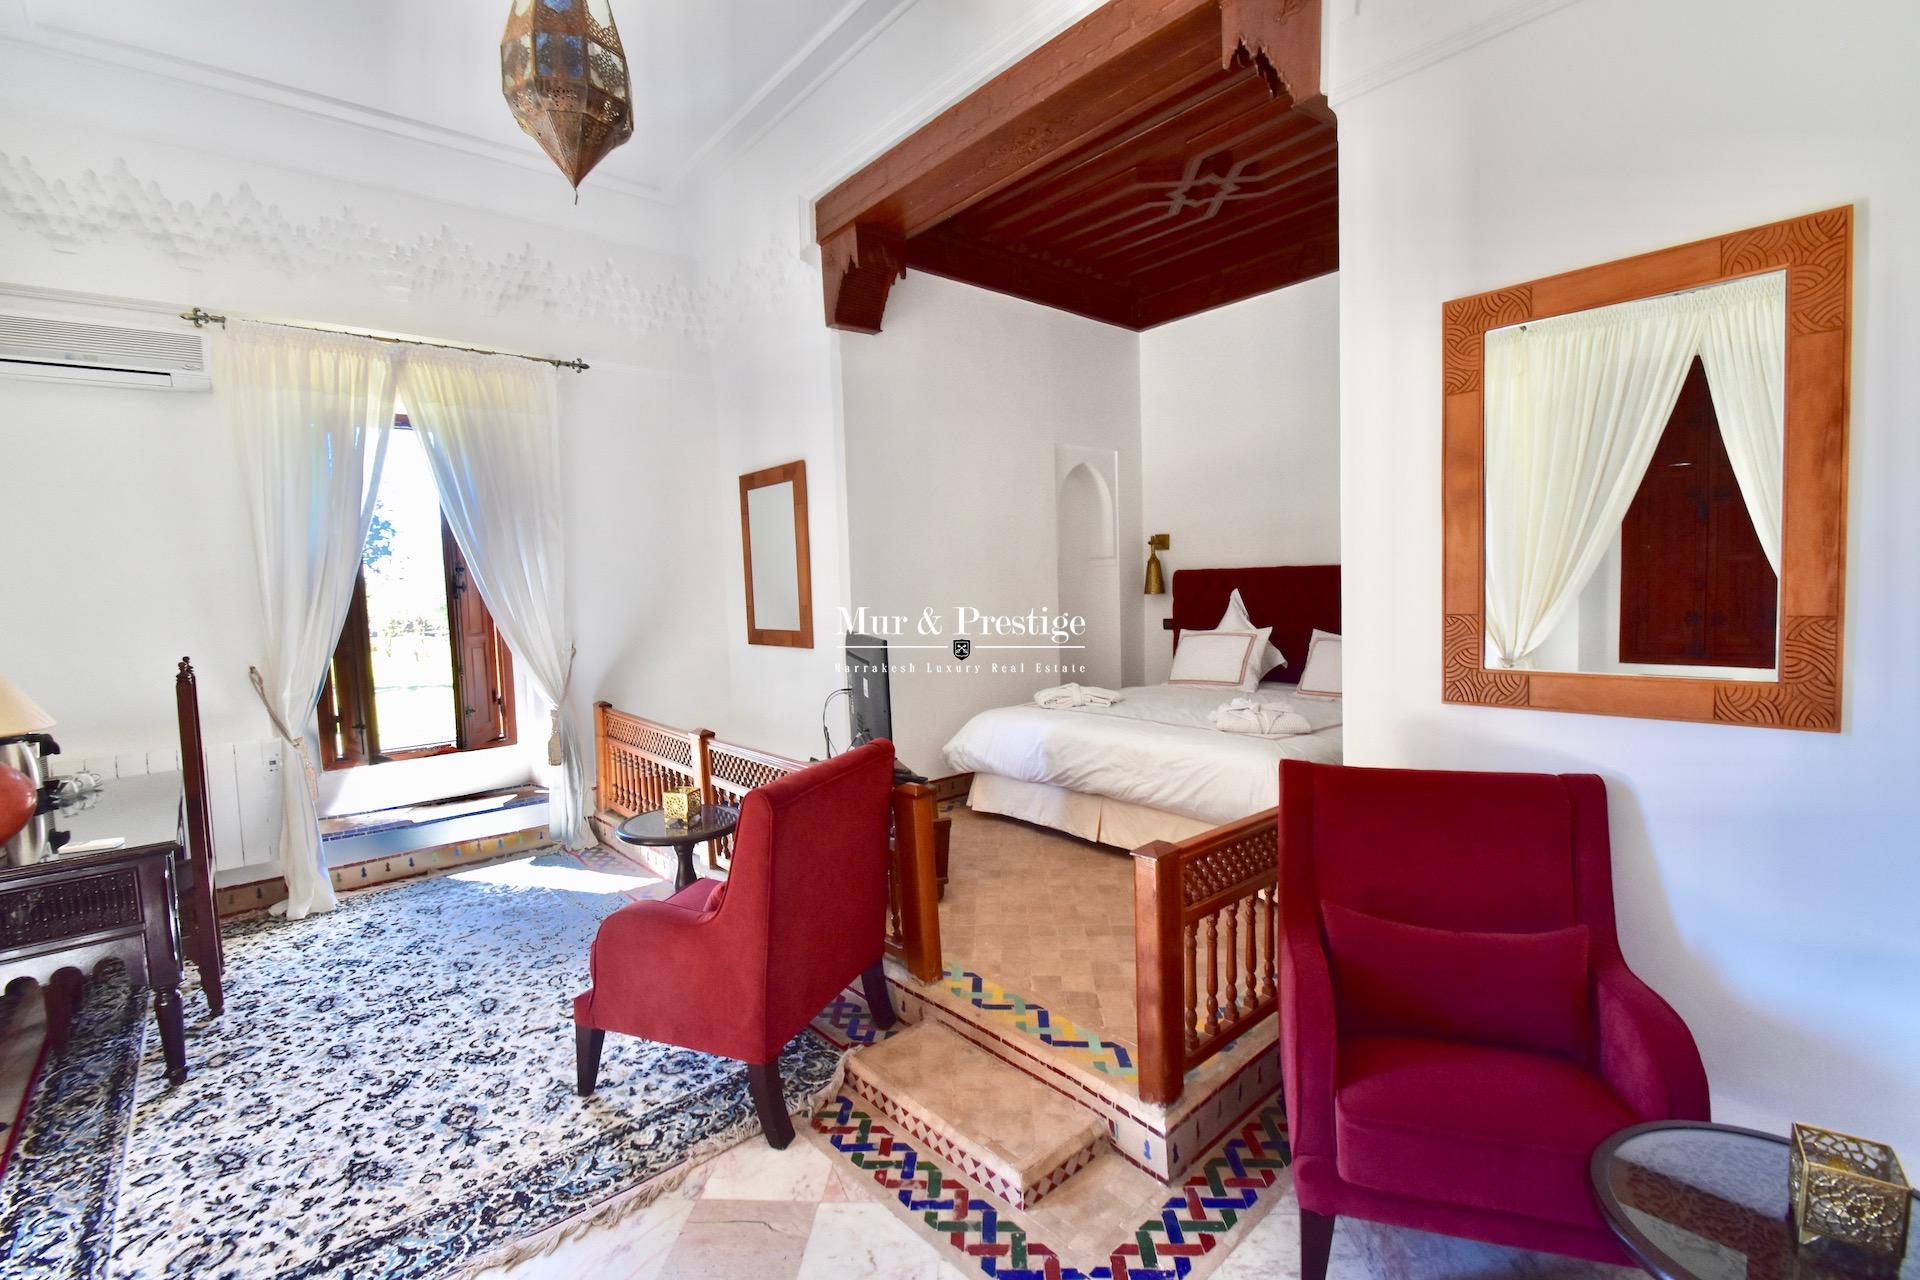 Maison à louer Charles Boccara pour votre séjour à Marrakech